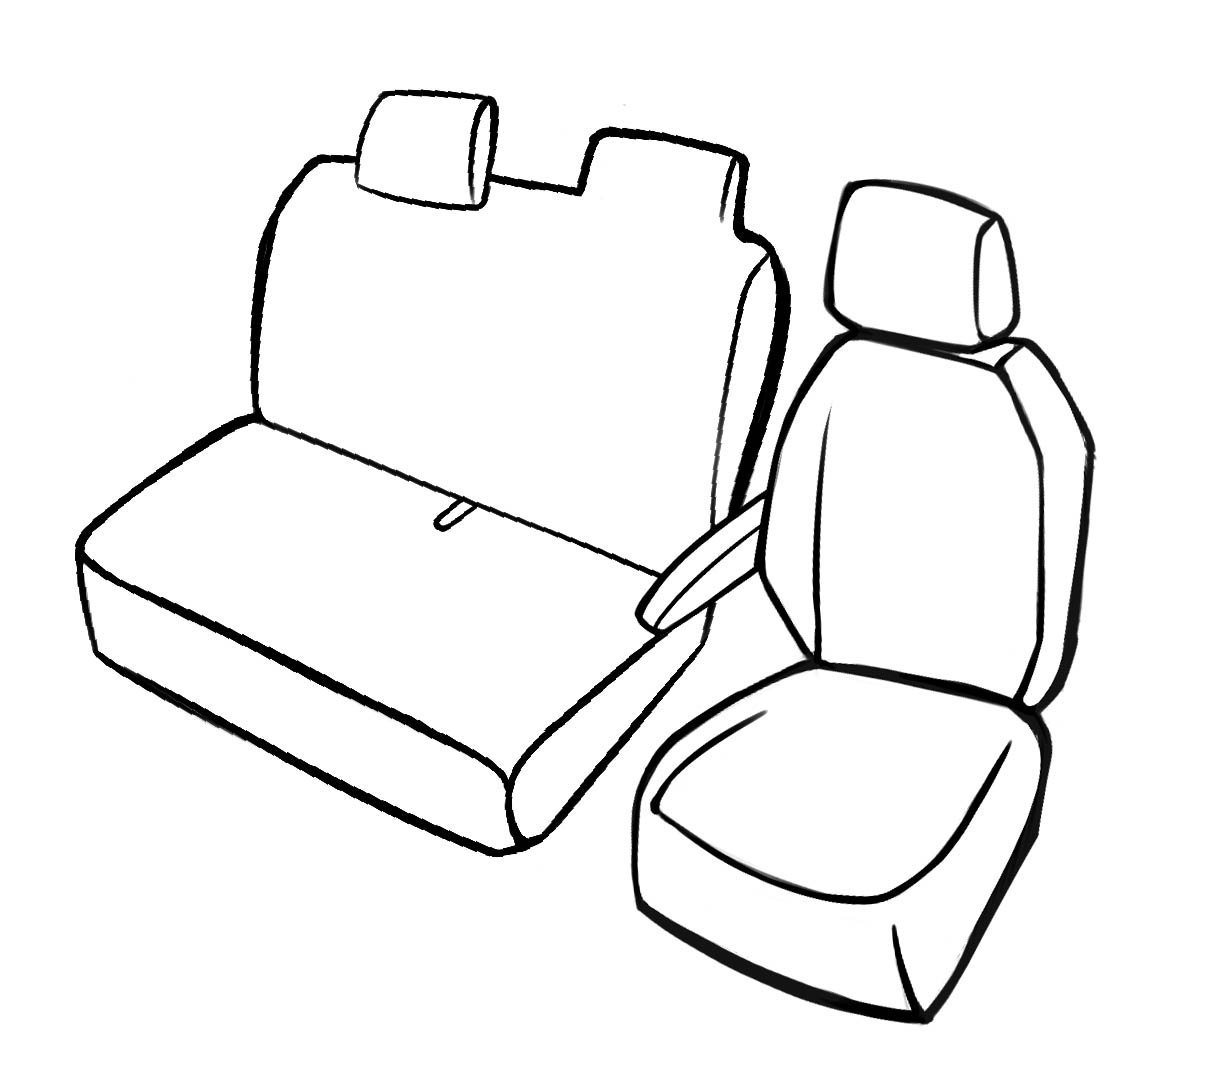 Premium Housse de siège pour Peugeot Boxer 2006- auj., 1 housse de siège simple avant + housse d'accoudoir, 1 couverture de banc double